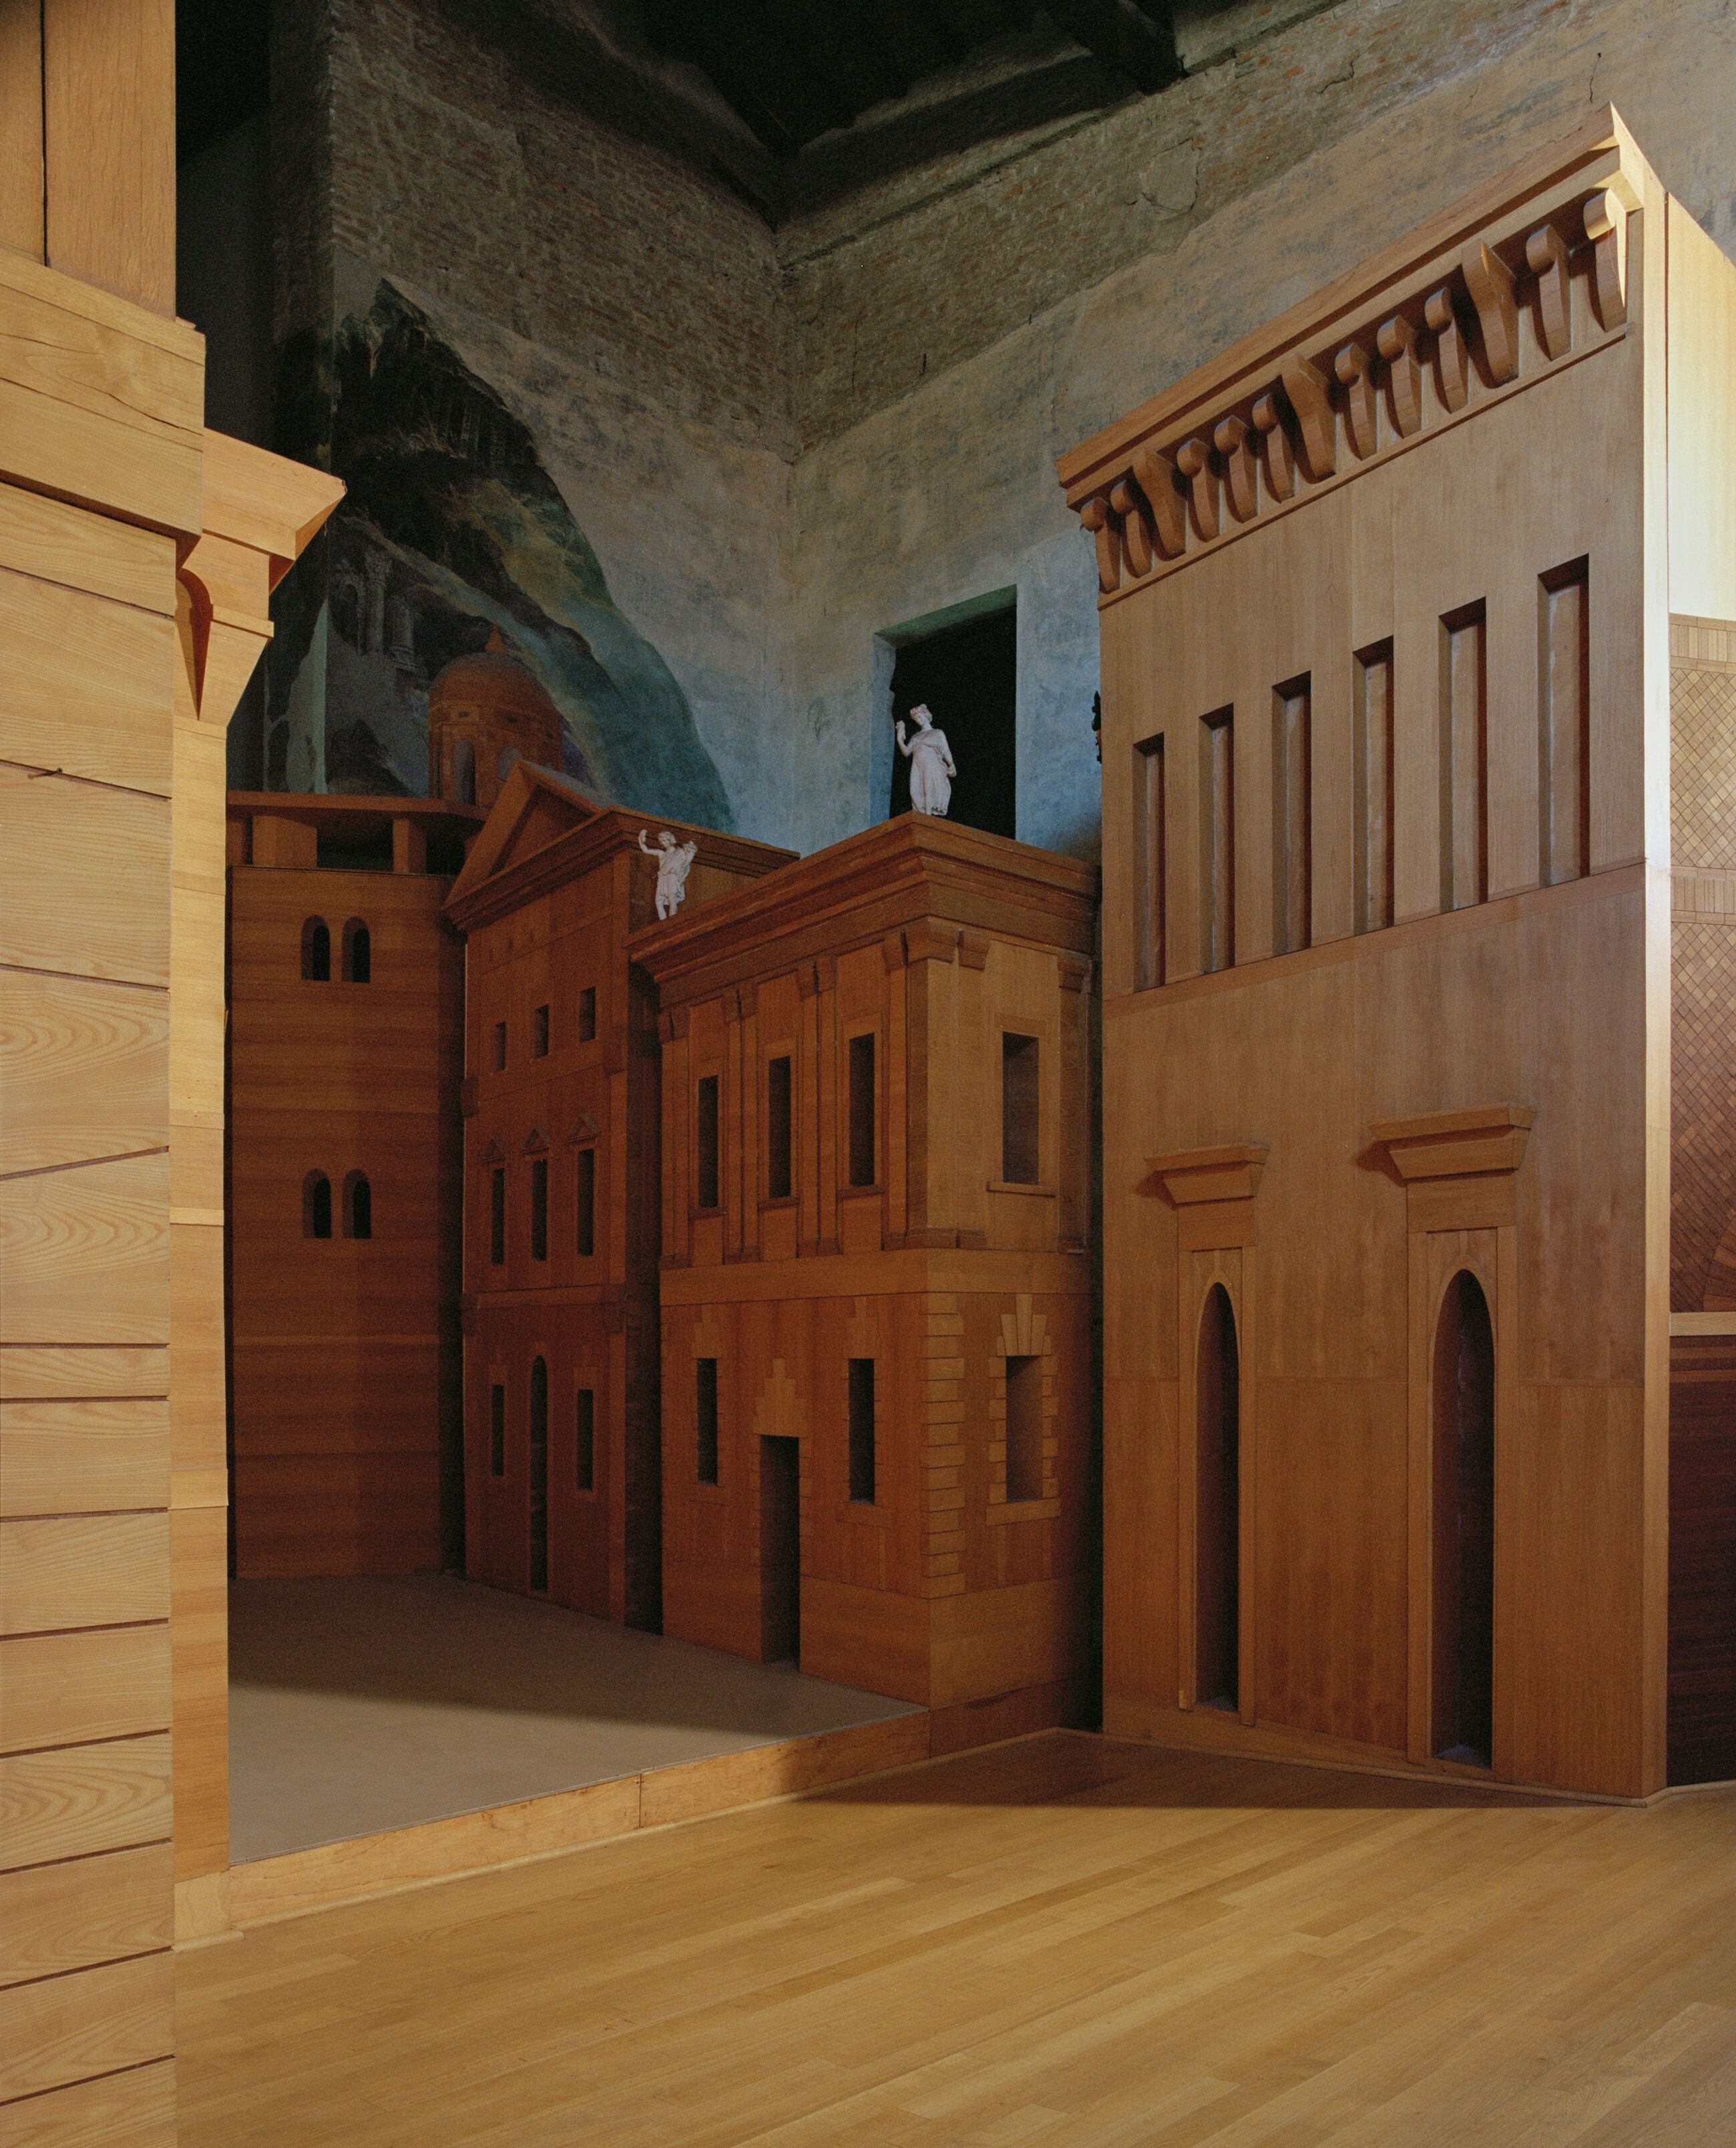 Tras la desaparición de la escenografía original de Scamozzi, los arquitectos Anna di Noto y Francesco Montu realizaron nuevas estructuras con perspectiva artificial, inauguradas en octubre de 1996.